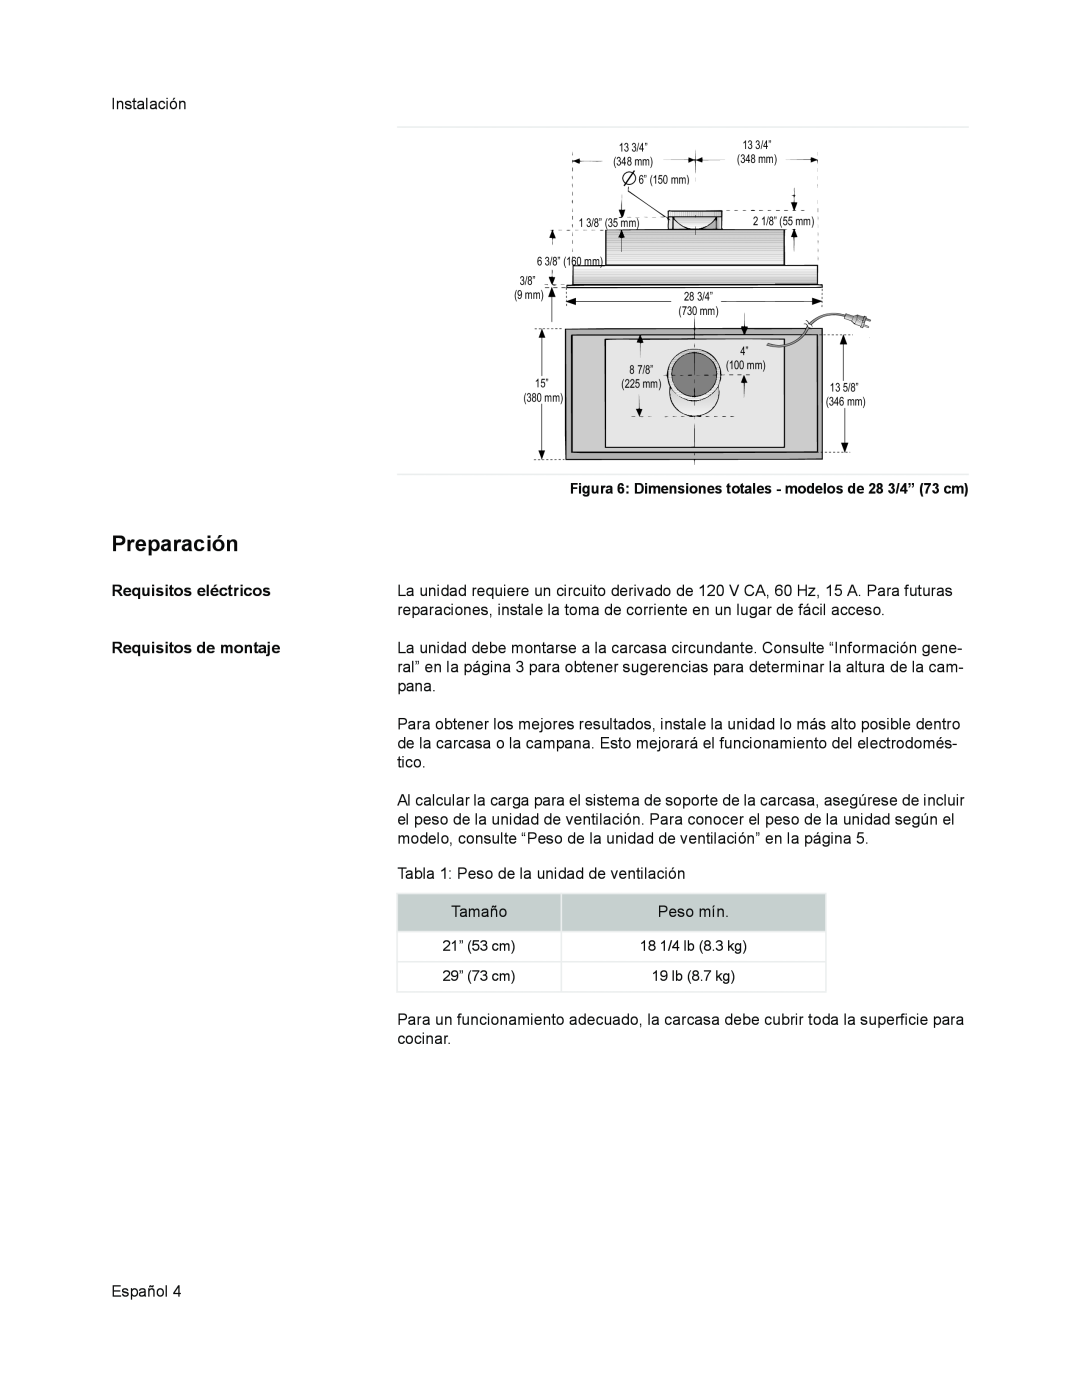 Bosch Appliances DHL 755 B installation manual Preparación, Requisitos eléctricos, Requisitos de montaje 